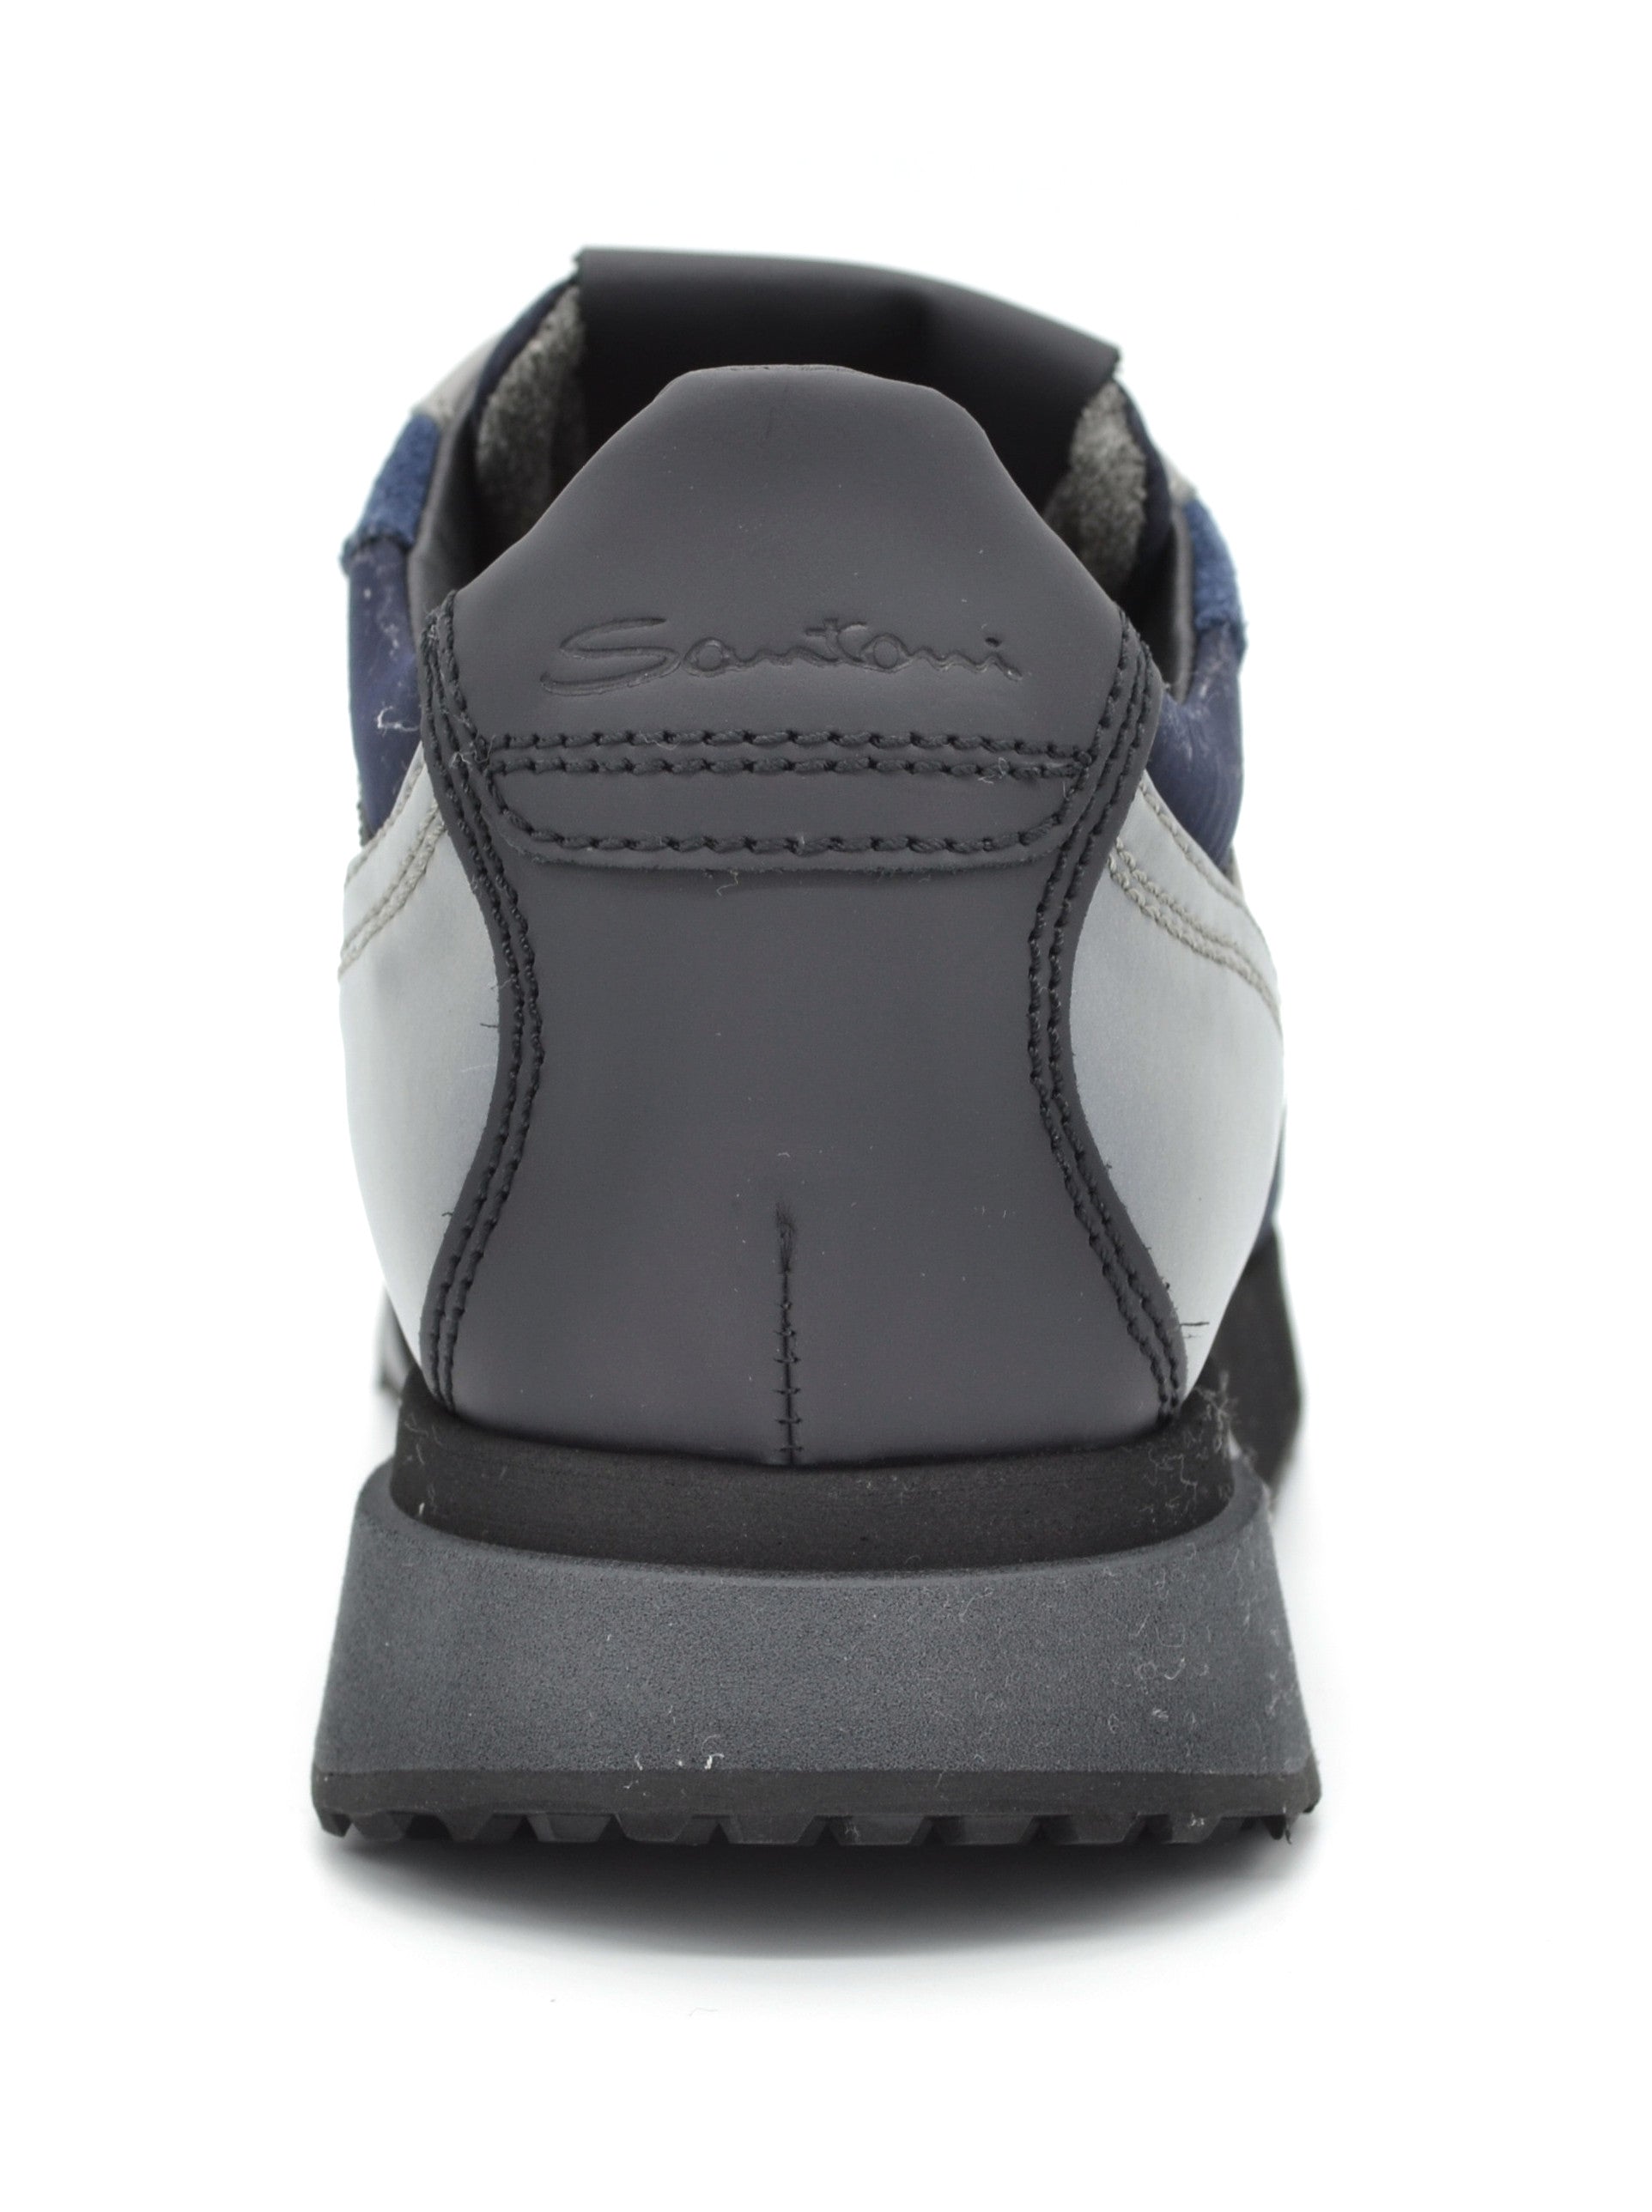 MBFW21168 grey blue sneaker